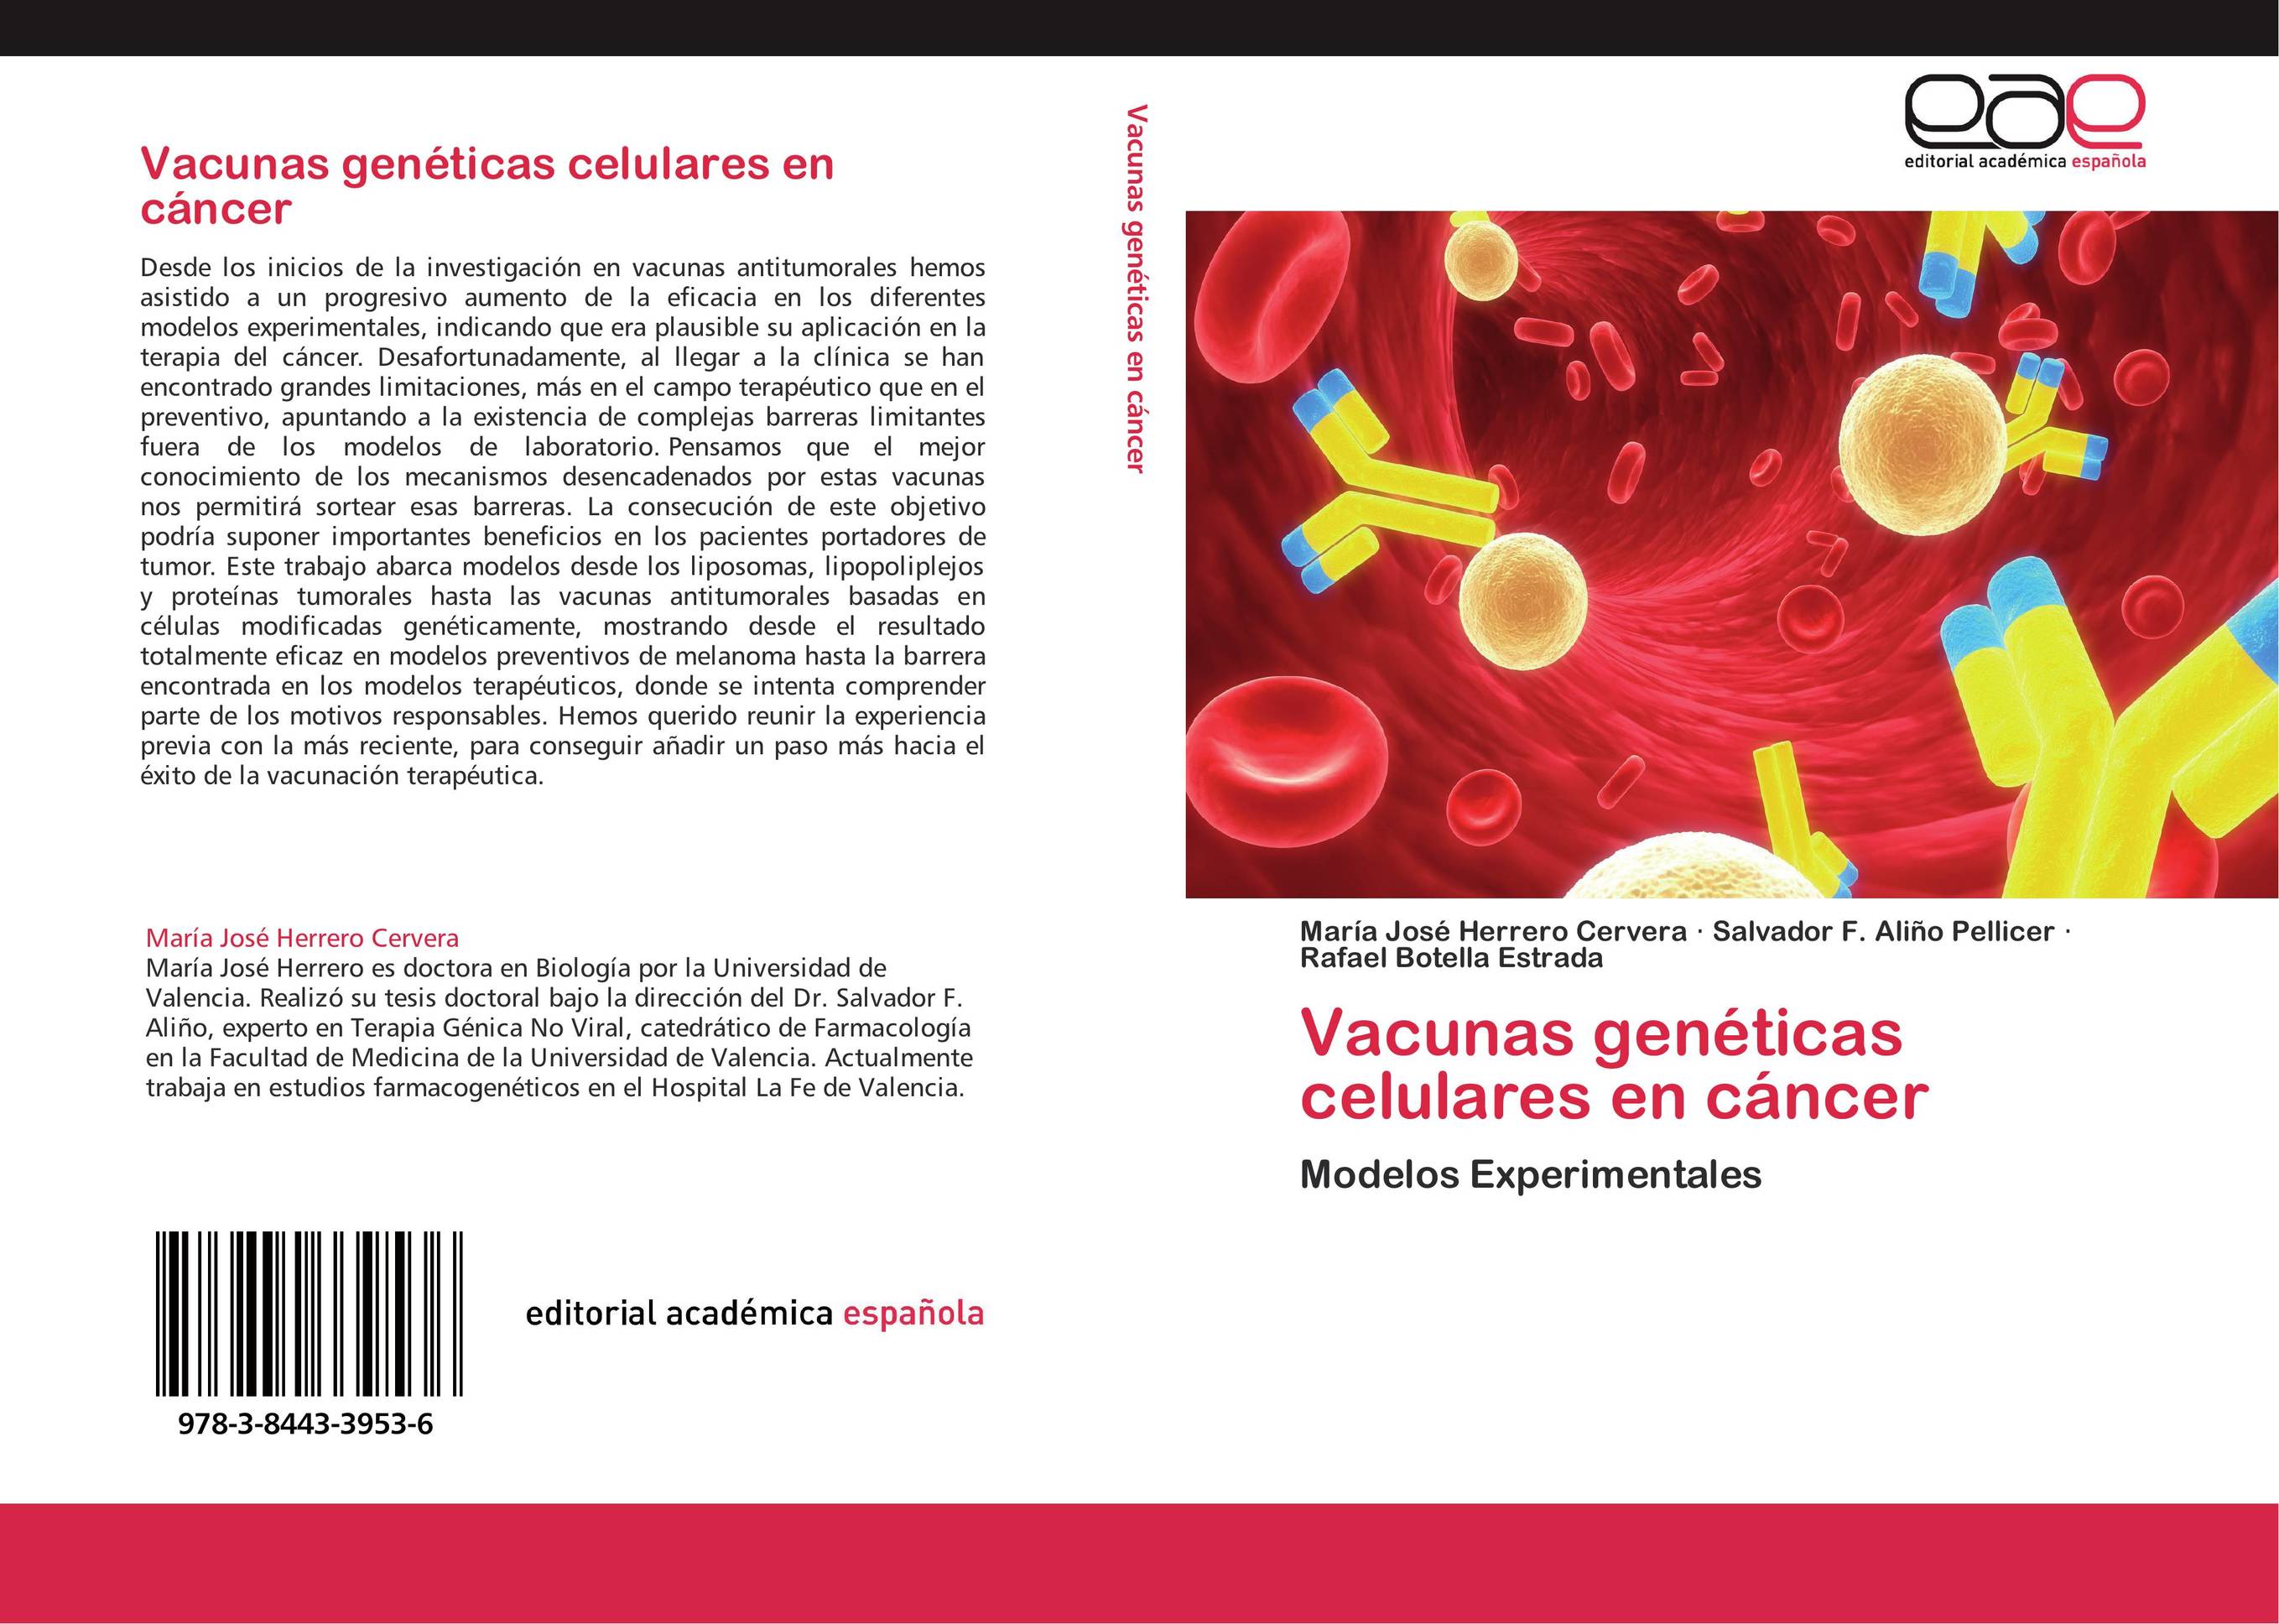 Vacunas genéticas celulares en cáncer